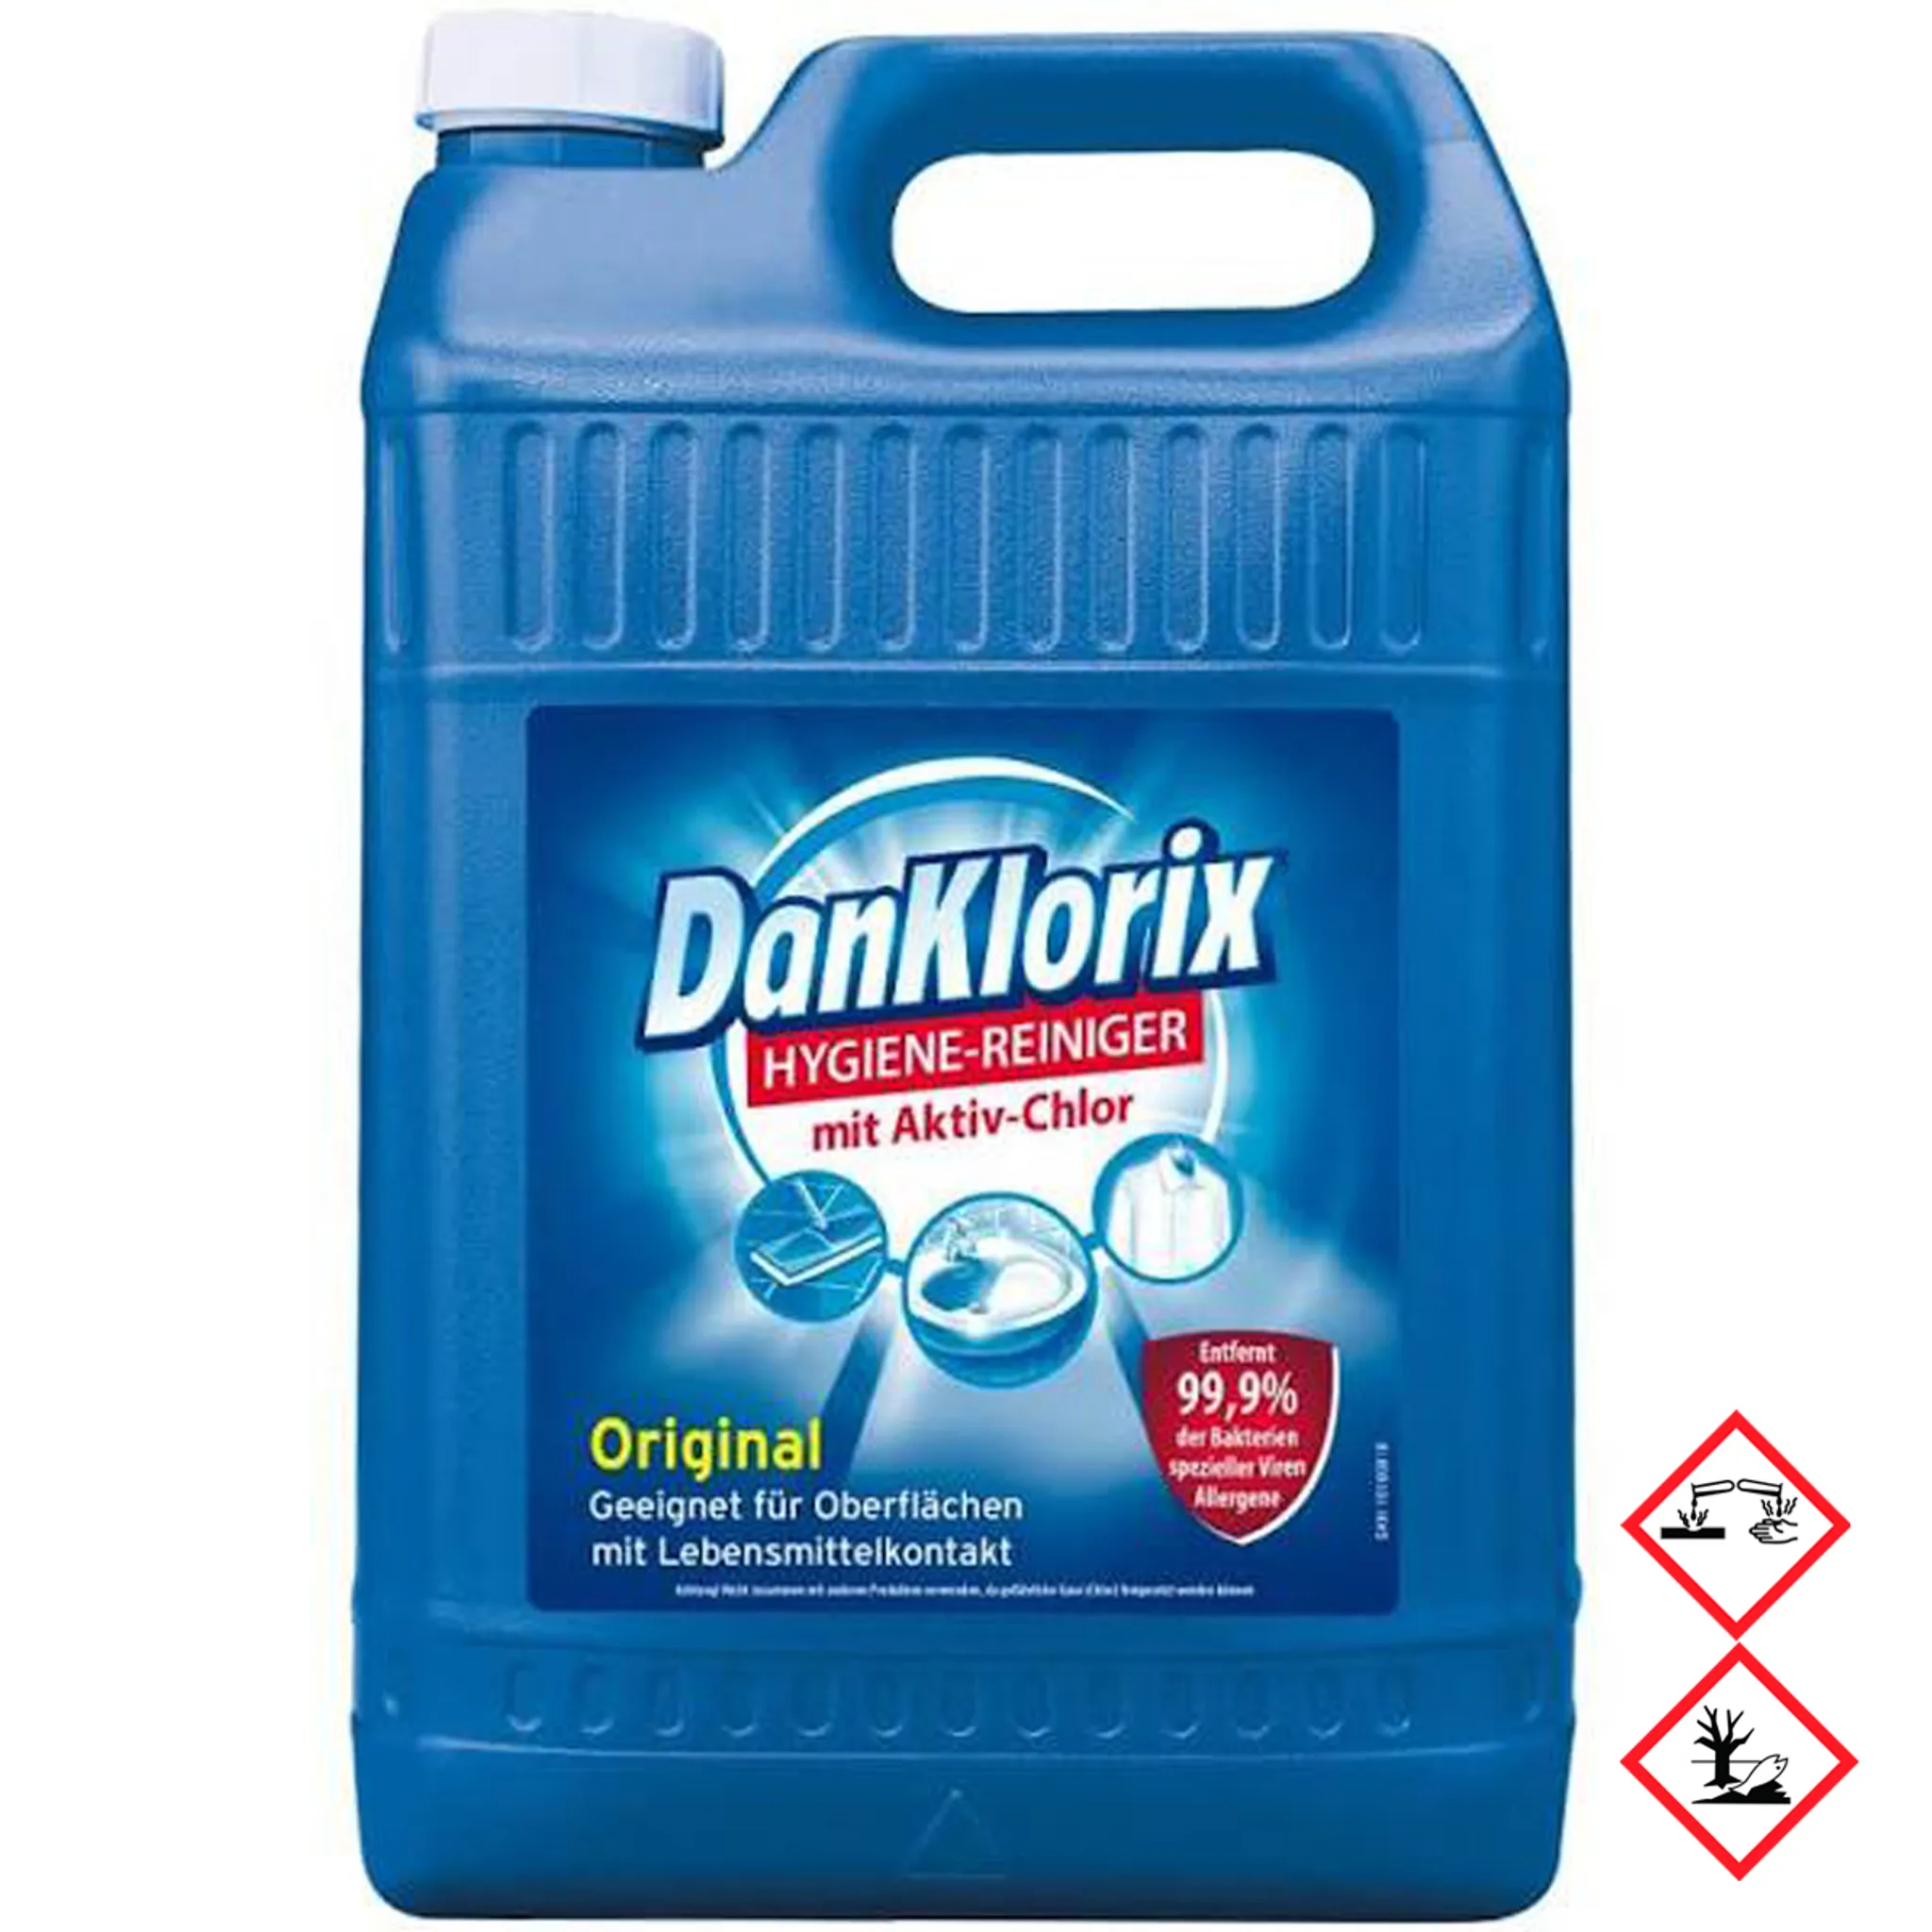 DanKlorix Original Hygiene Reiniger mit Aktiv